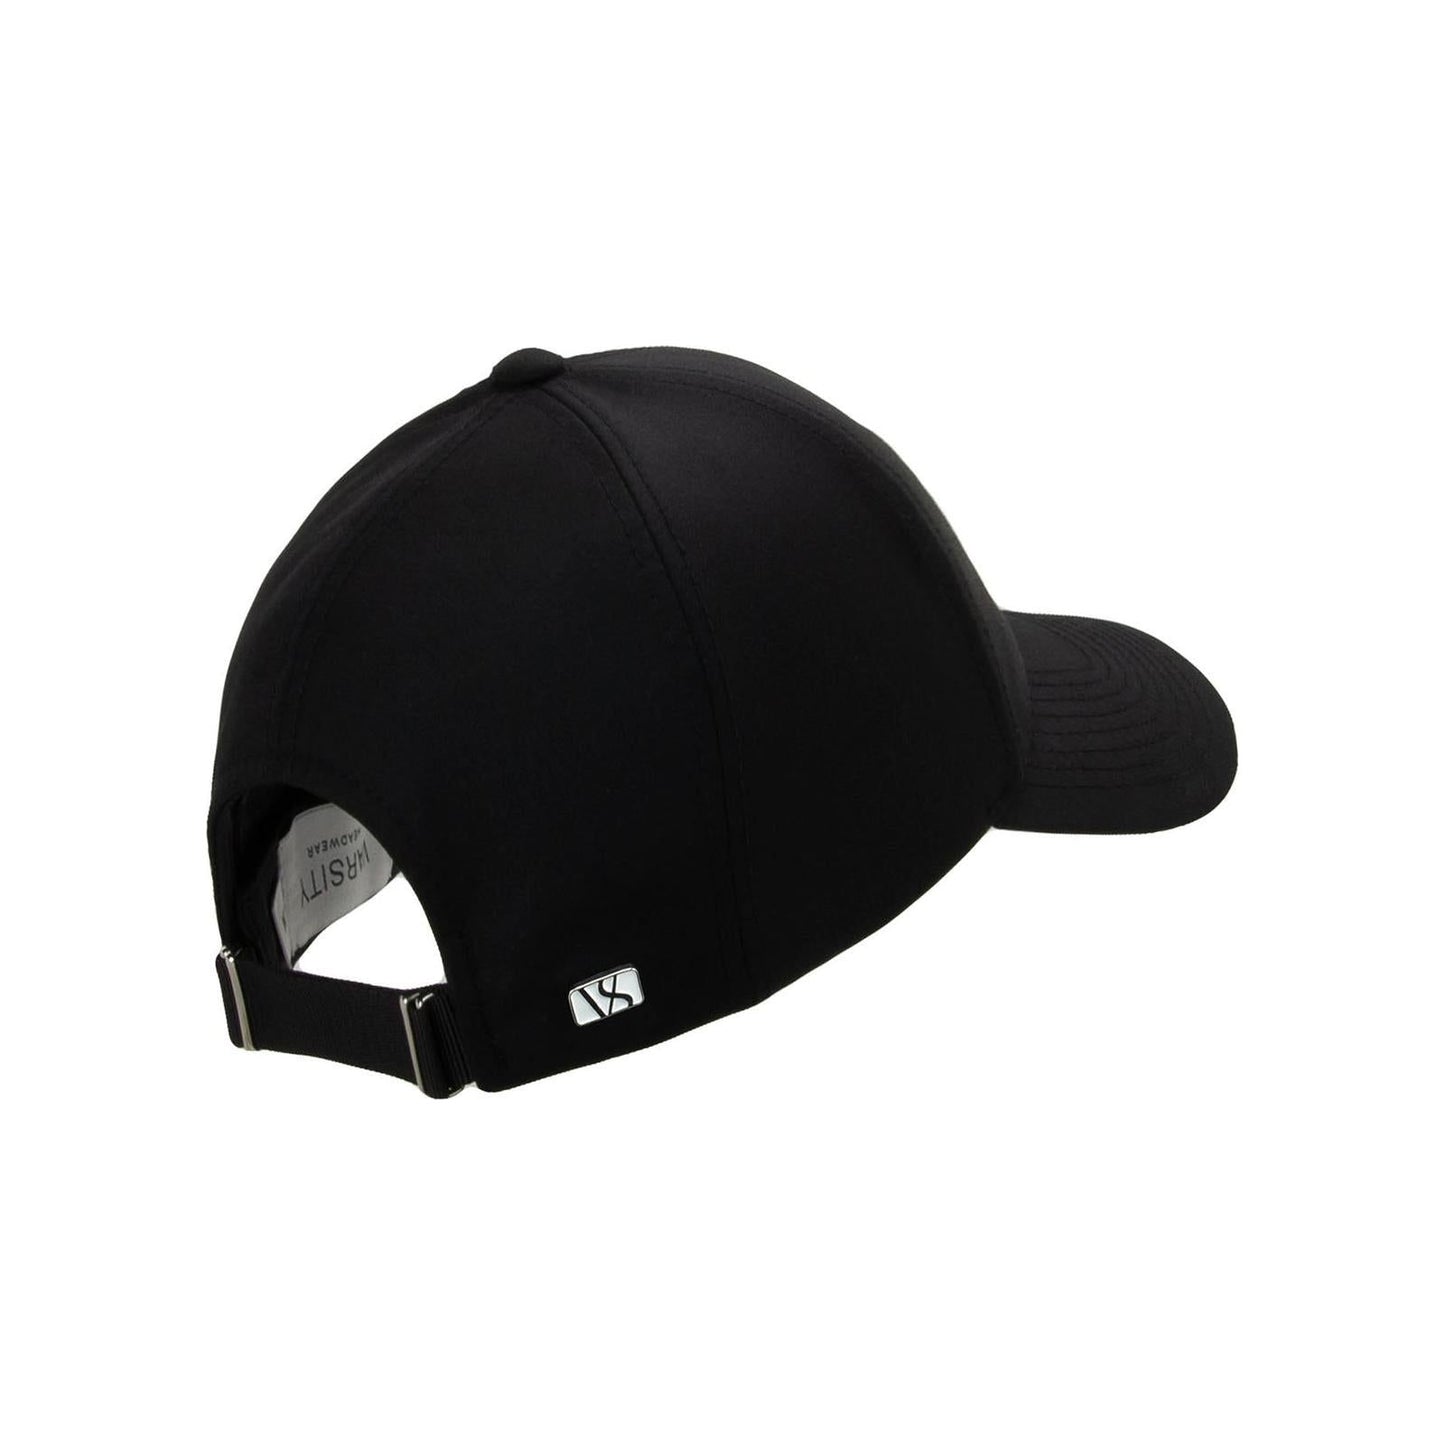 Varsity Headwear Baseball Cap Wool Tech Cap, Black